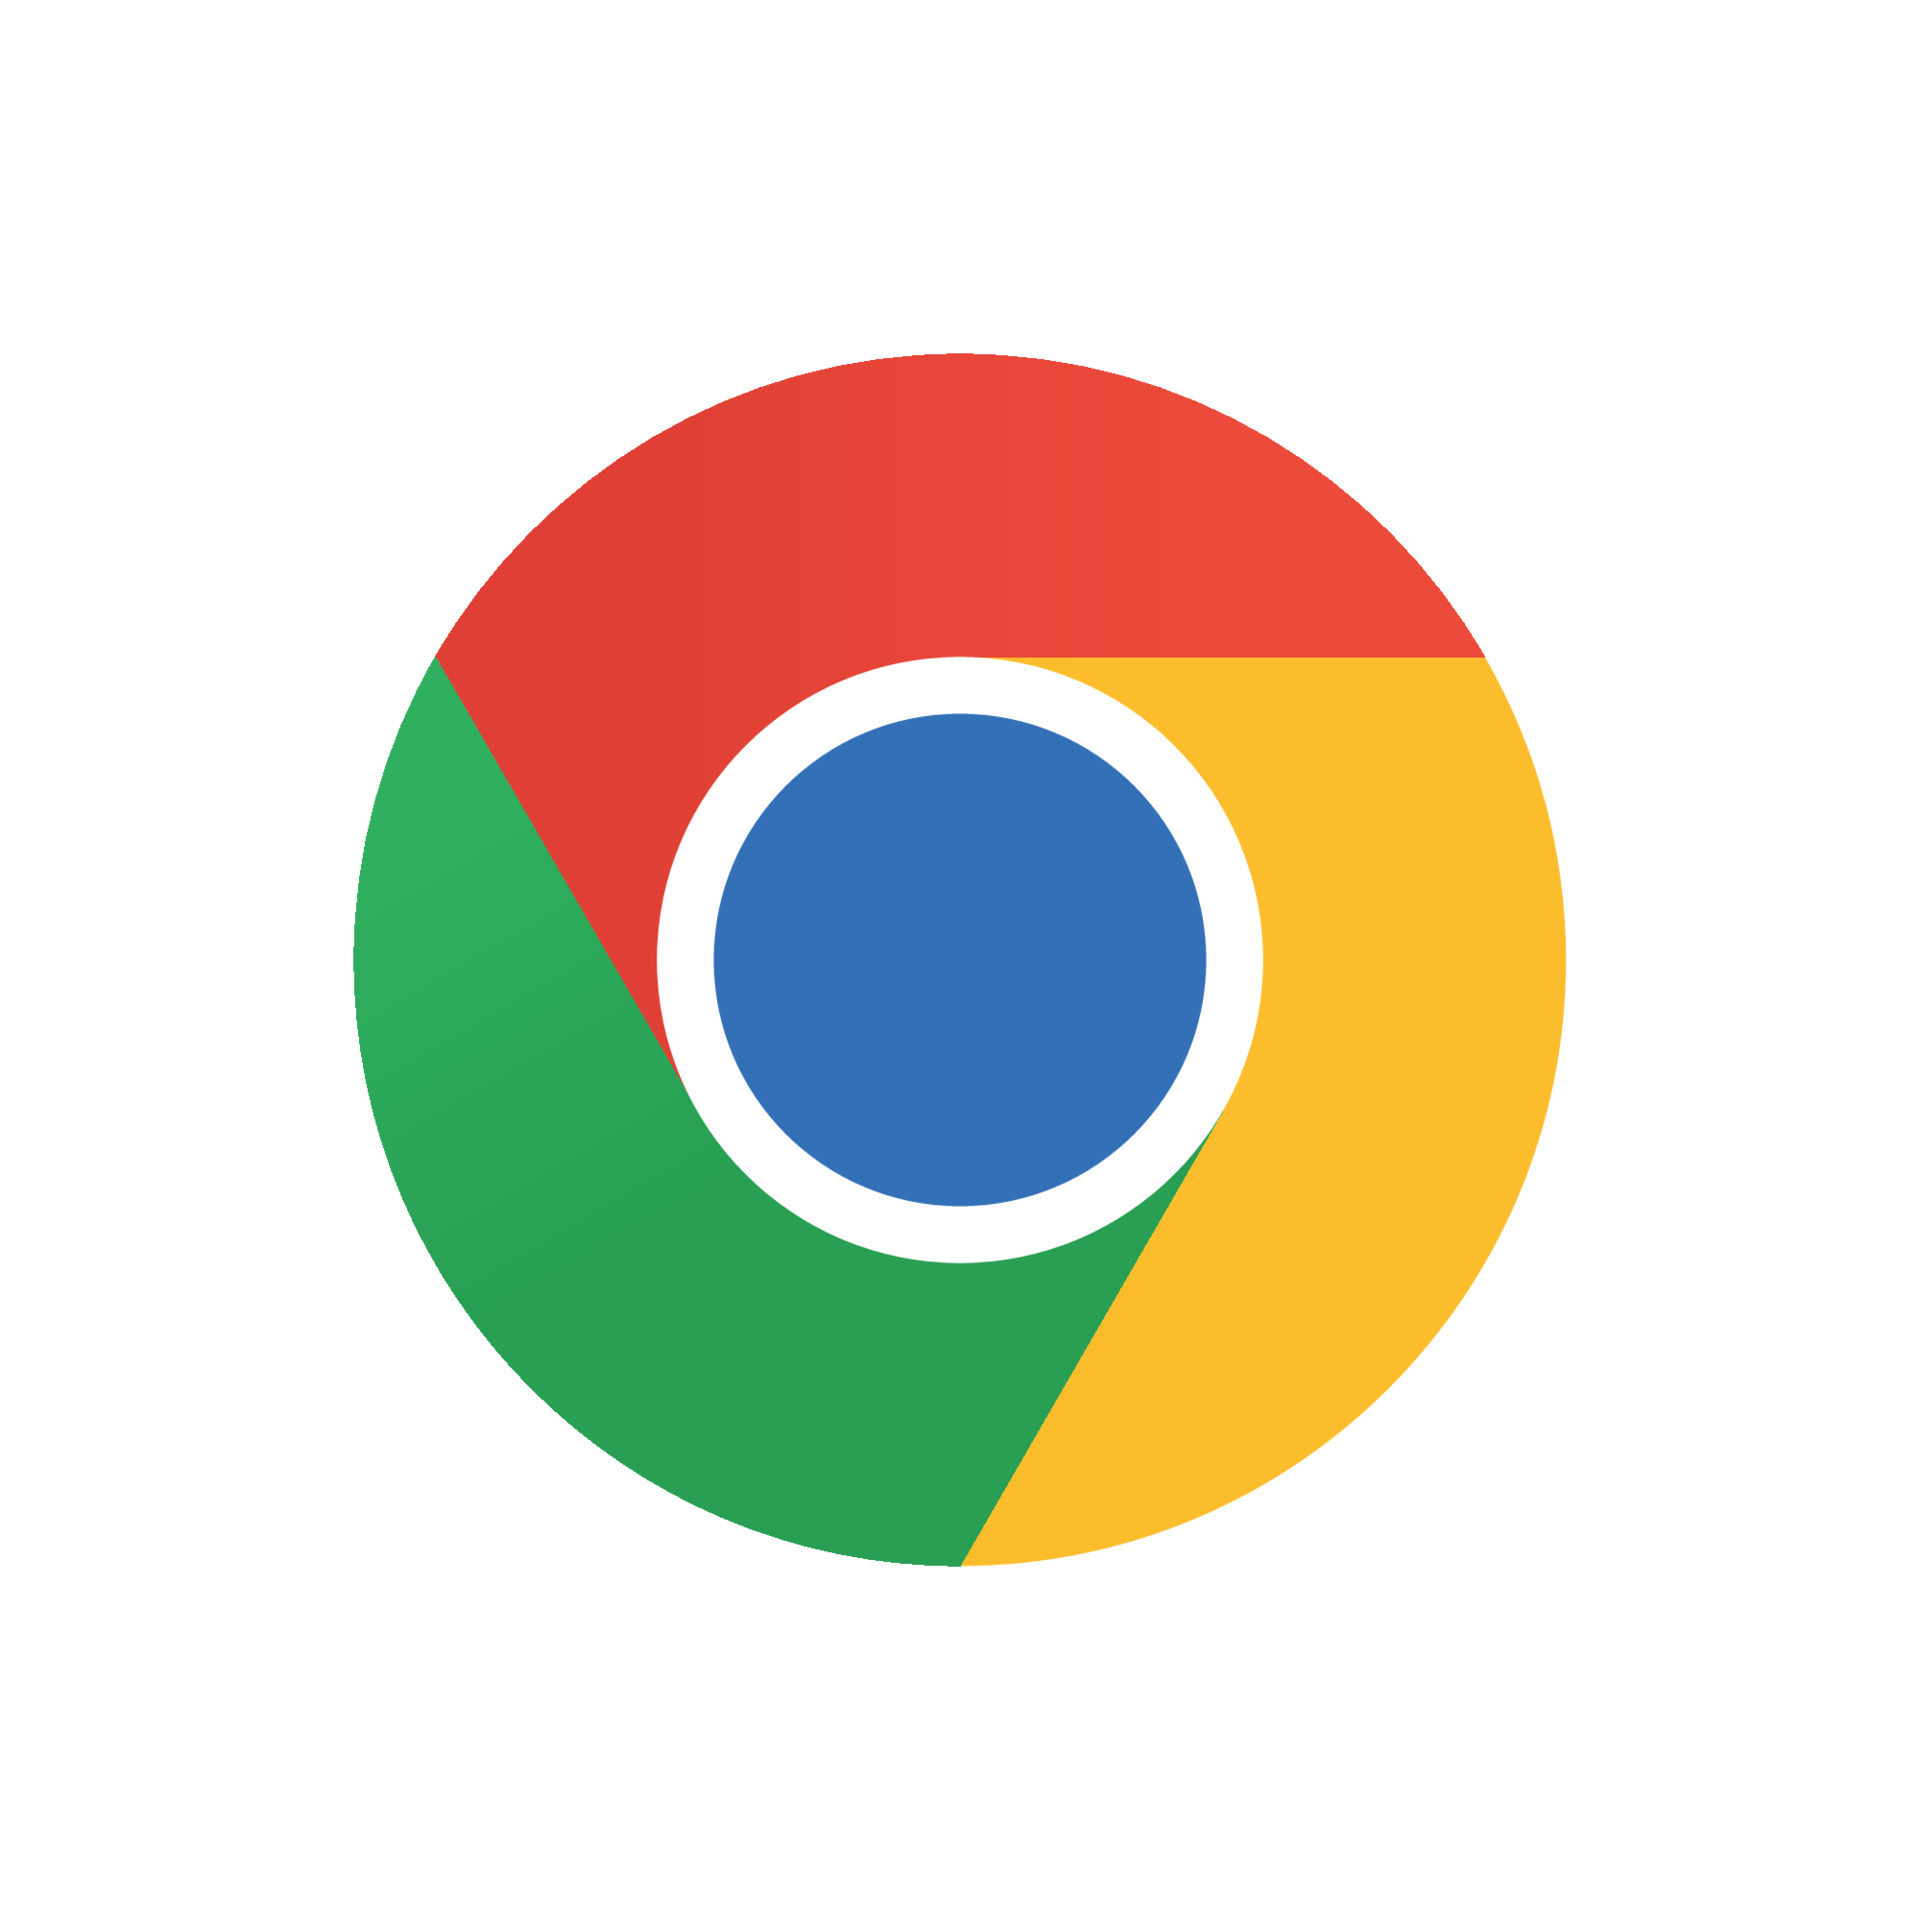 Đừng bỏ qua biểu tượng chrome sáng bóng! Chúng tôi đã chọn hình ảnh logo chrome để khám phá. Được được thiết kết theo phong cách đặc trưng của Google, biểu tượng này thực sự rất cuốn hút và hấp dẫn.